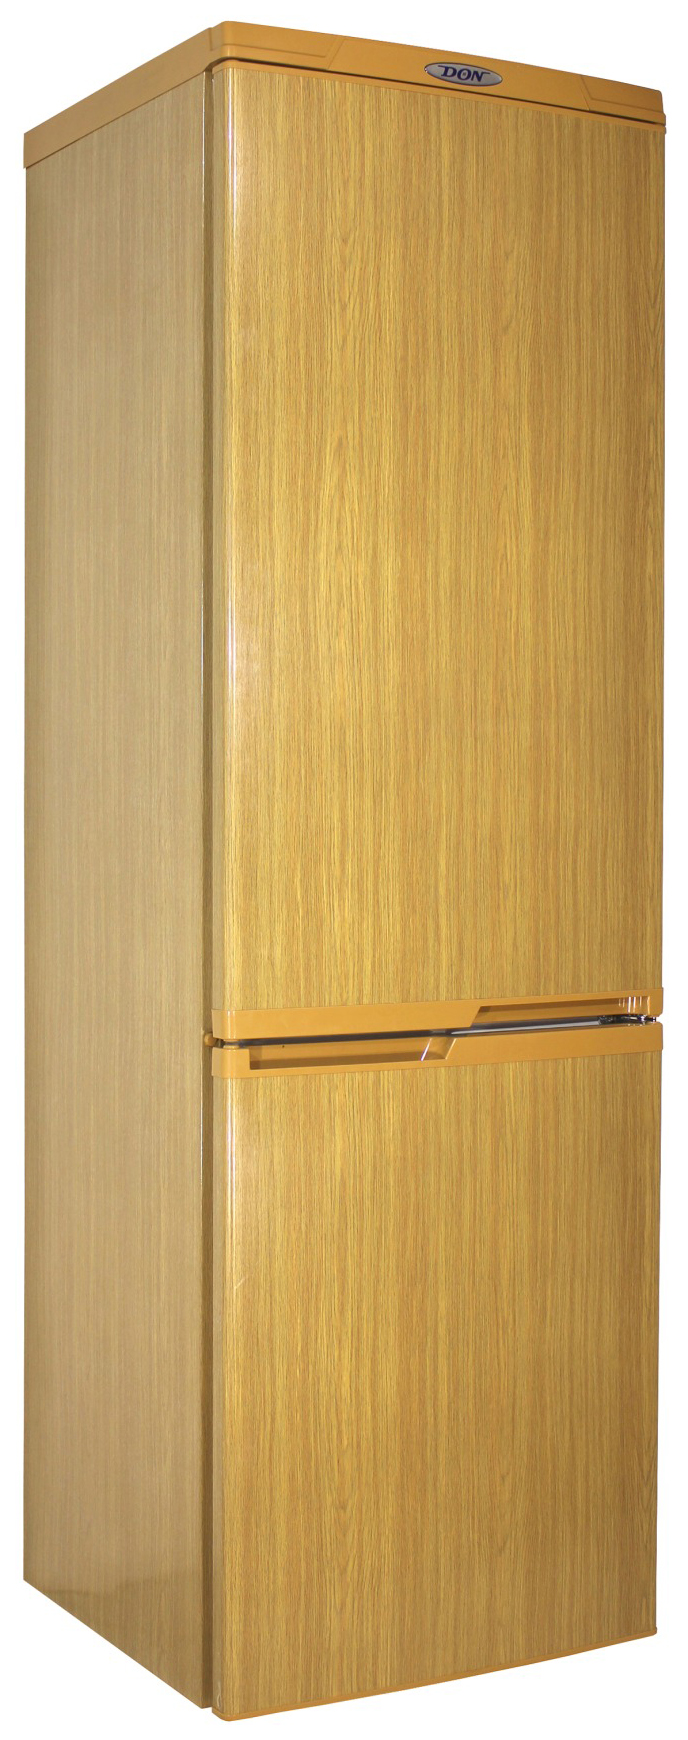 Холодильник DON R 291 DUB коричневый холодильник olto rf 090 коричневый